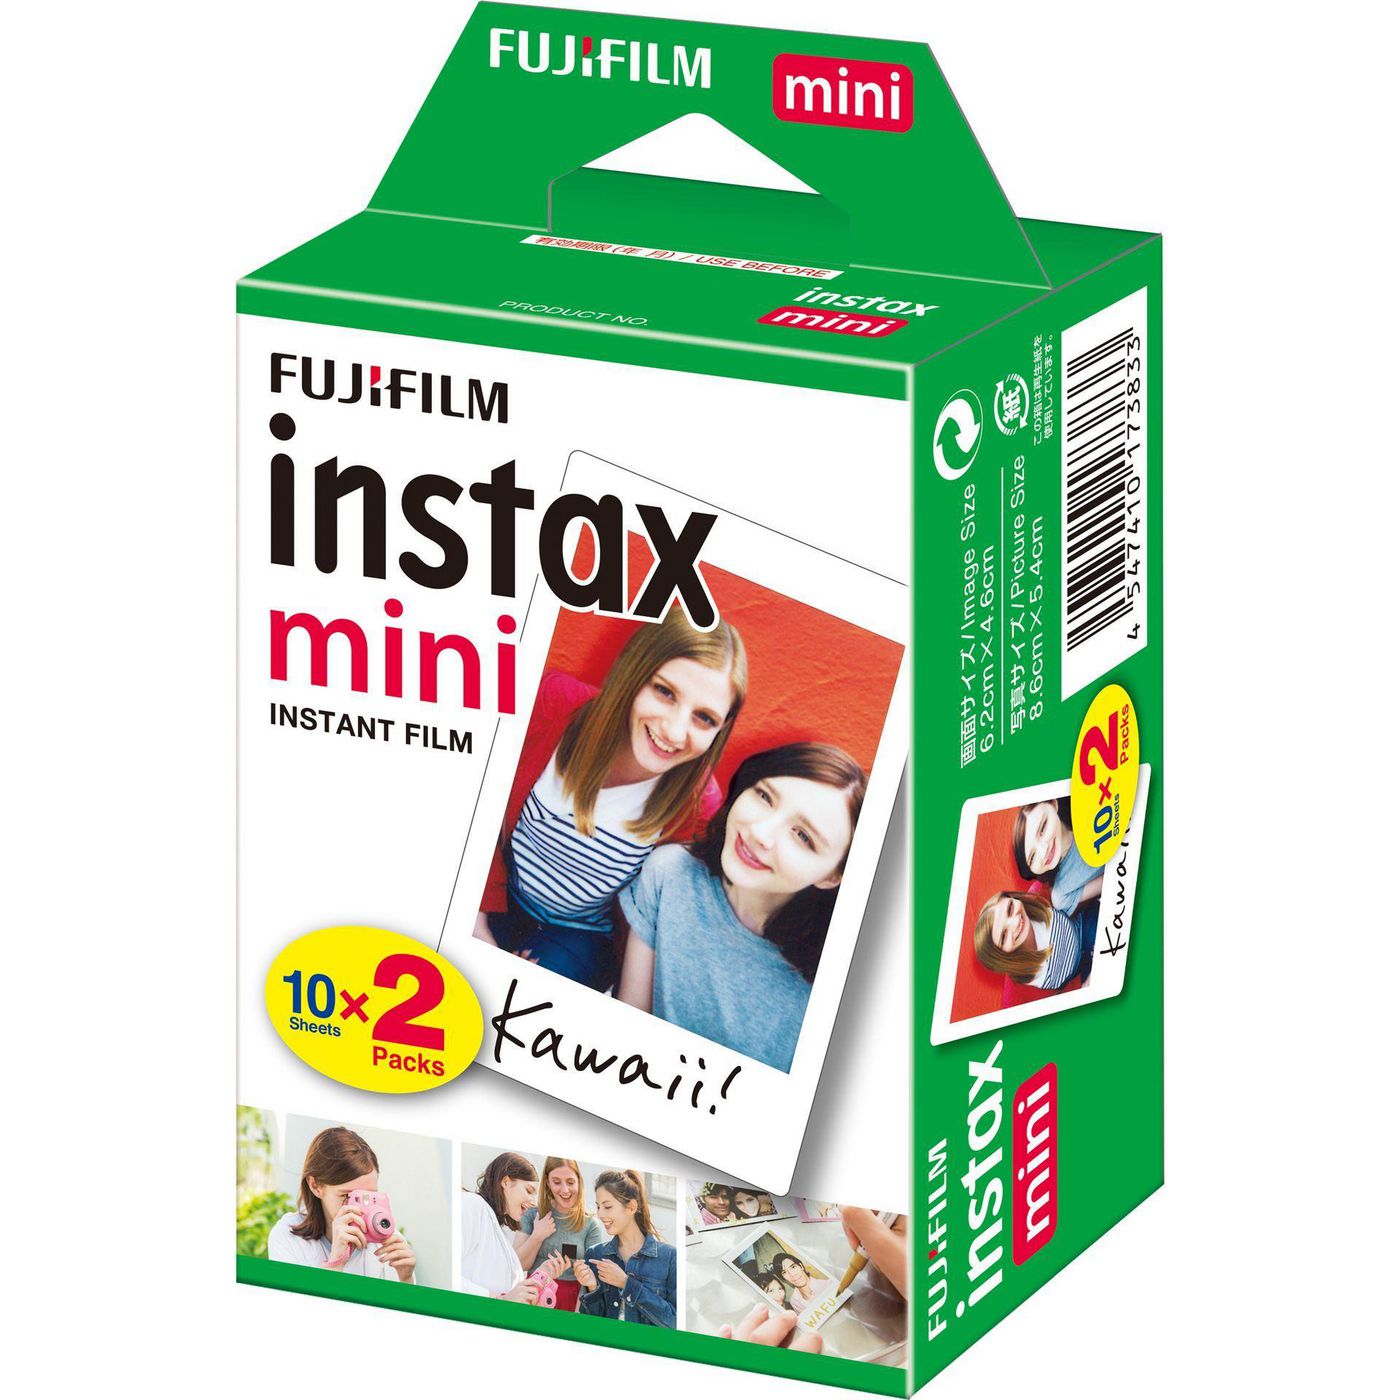 FUJIFILM 1x2 instax mini Film white frame